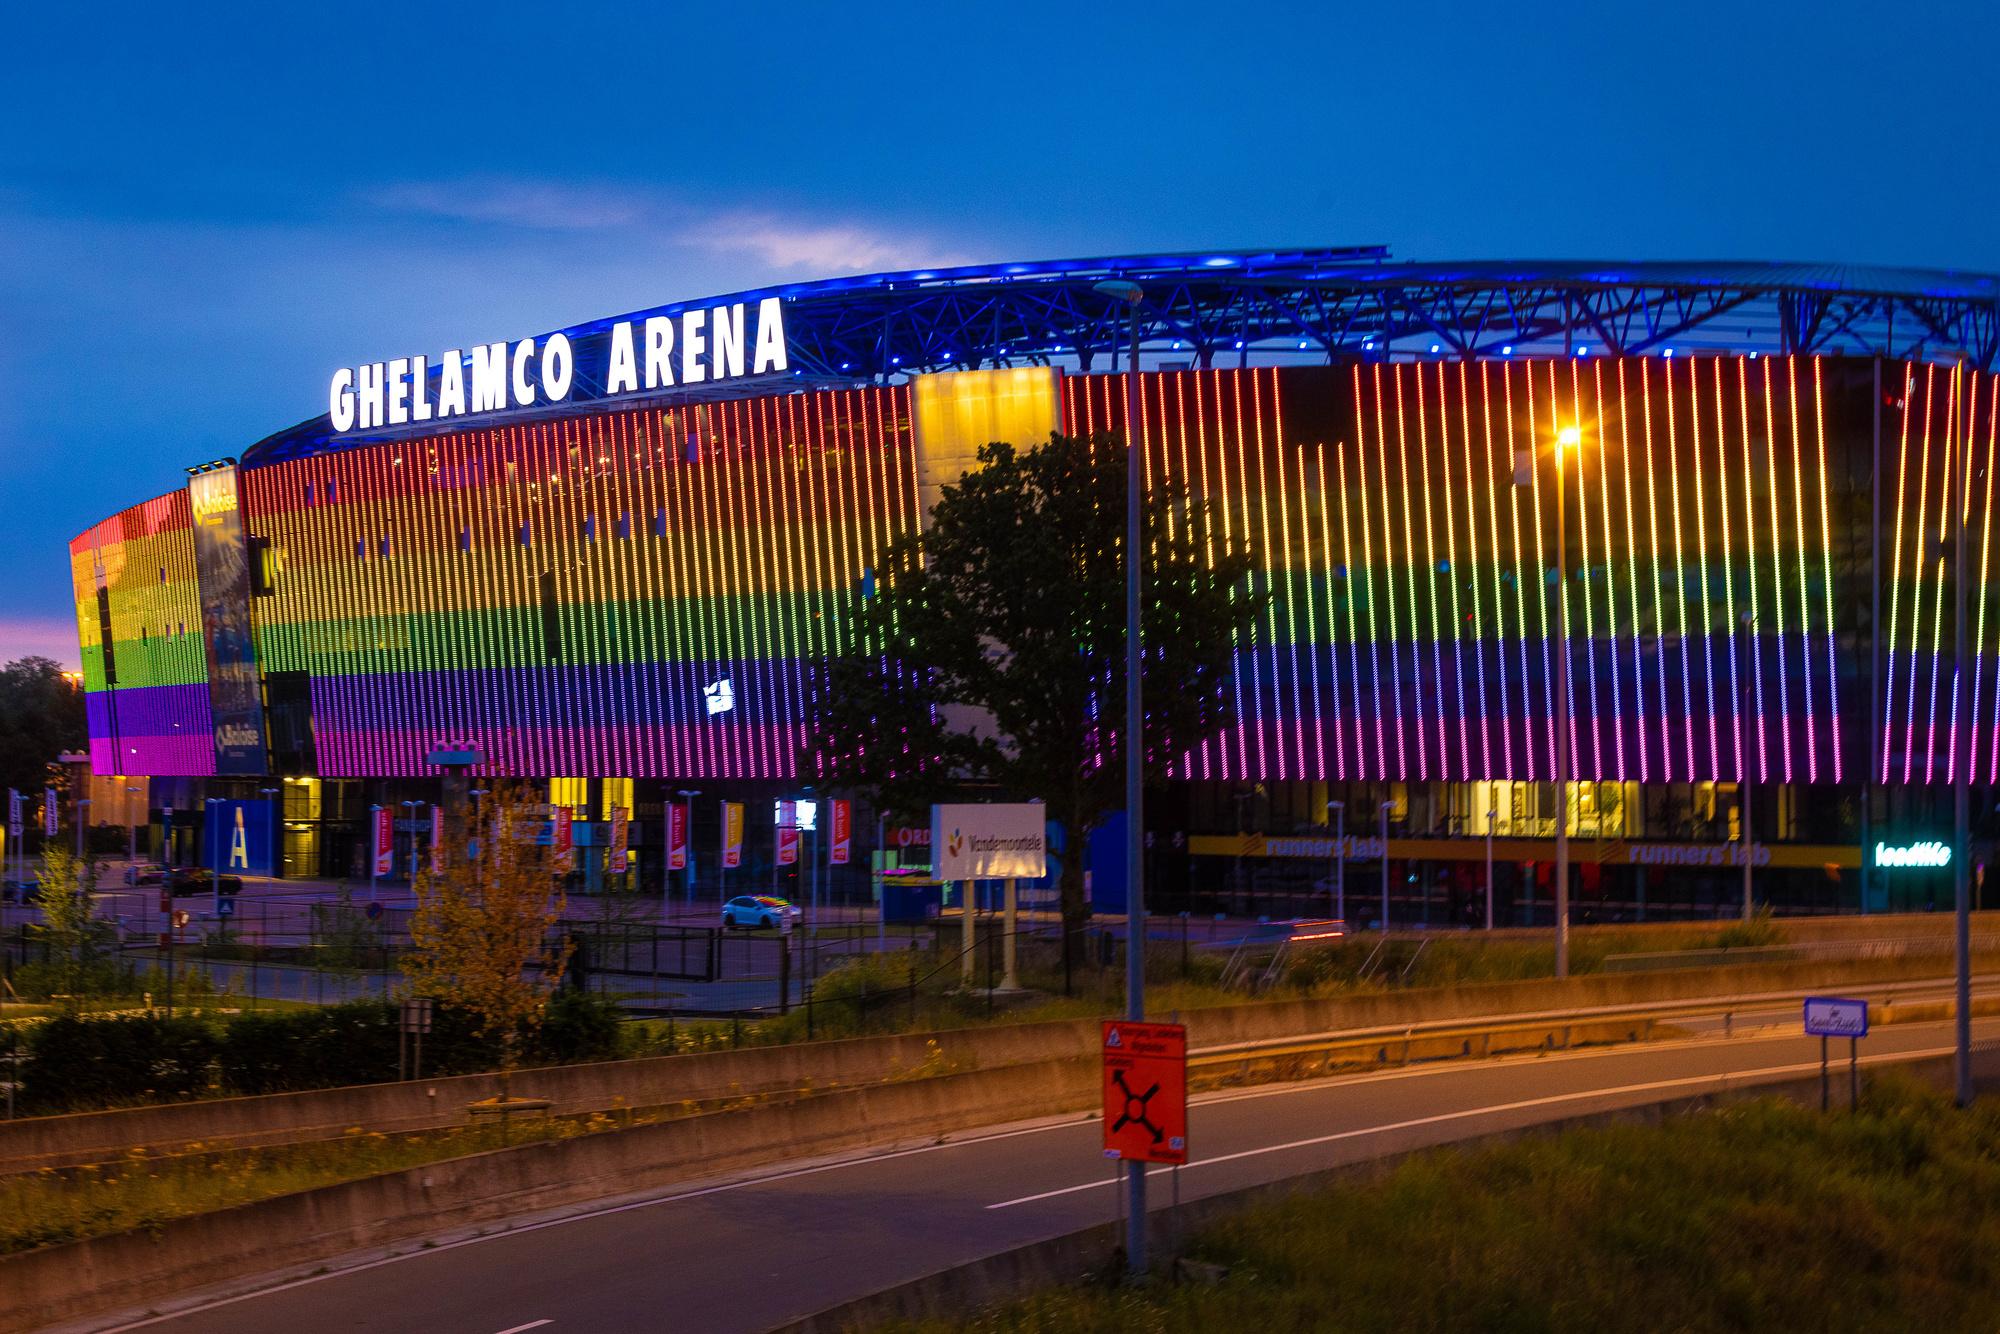 La Ghelamco Arena, chef lieu de la Jupiler Pro League, illuminée en solidarité pour la cause LGBT+ à Gand.